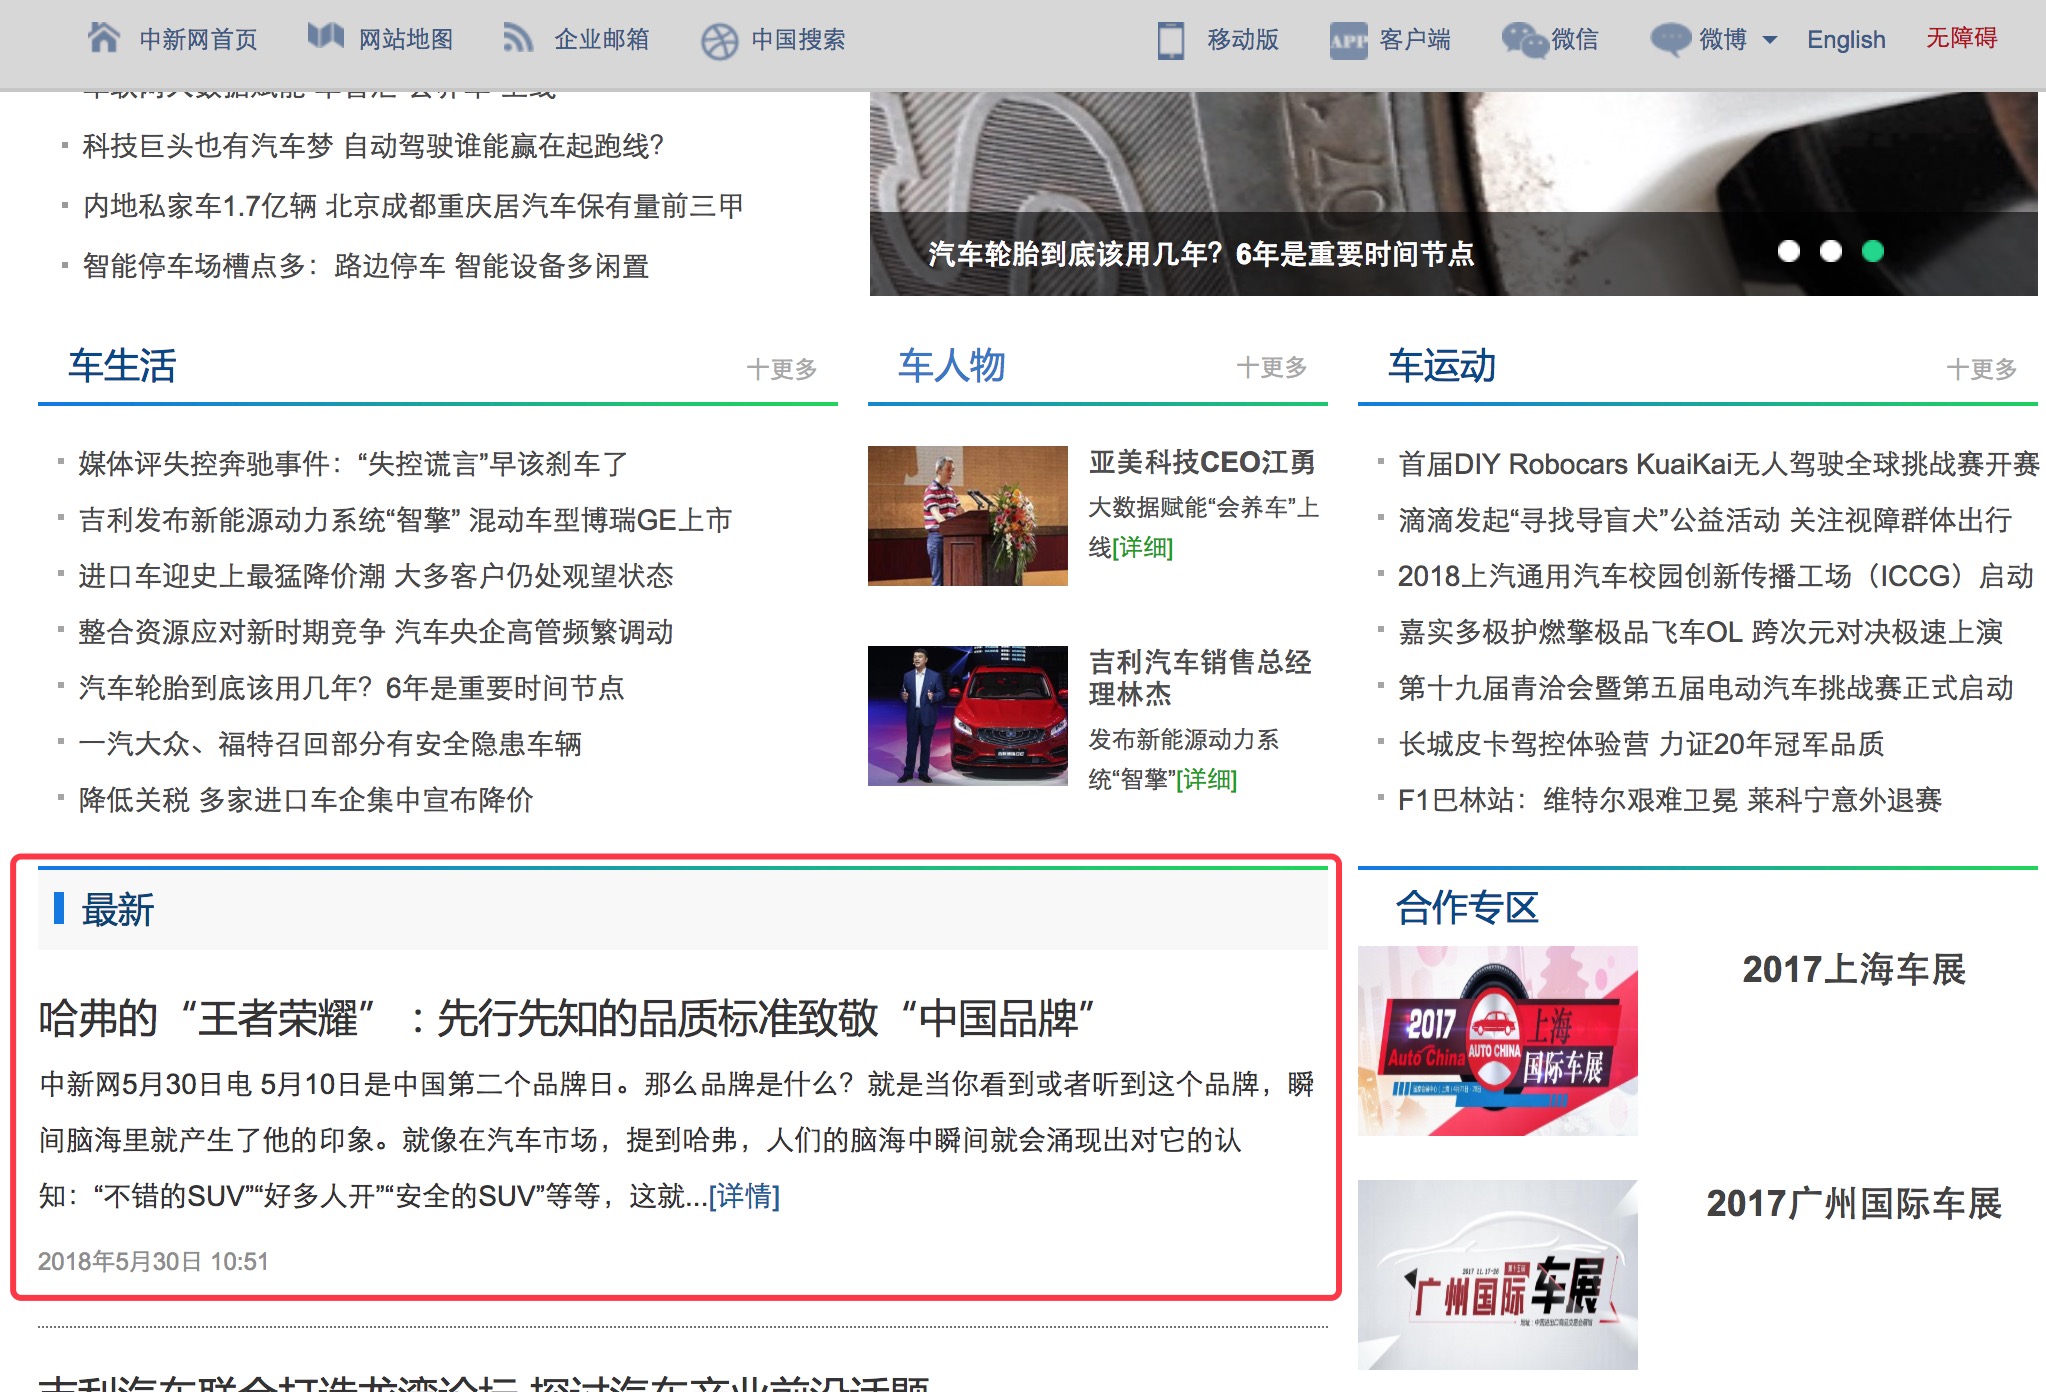 中国新闻网-汽车-首页文字链